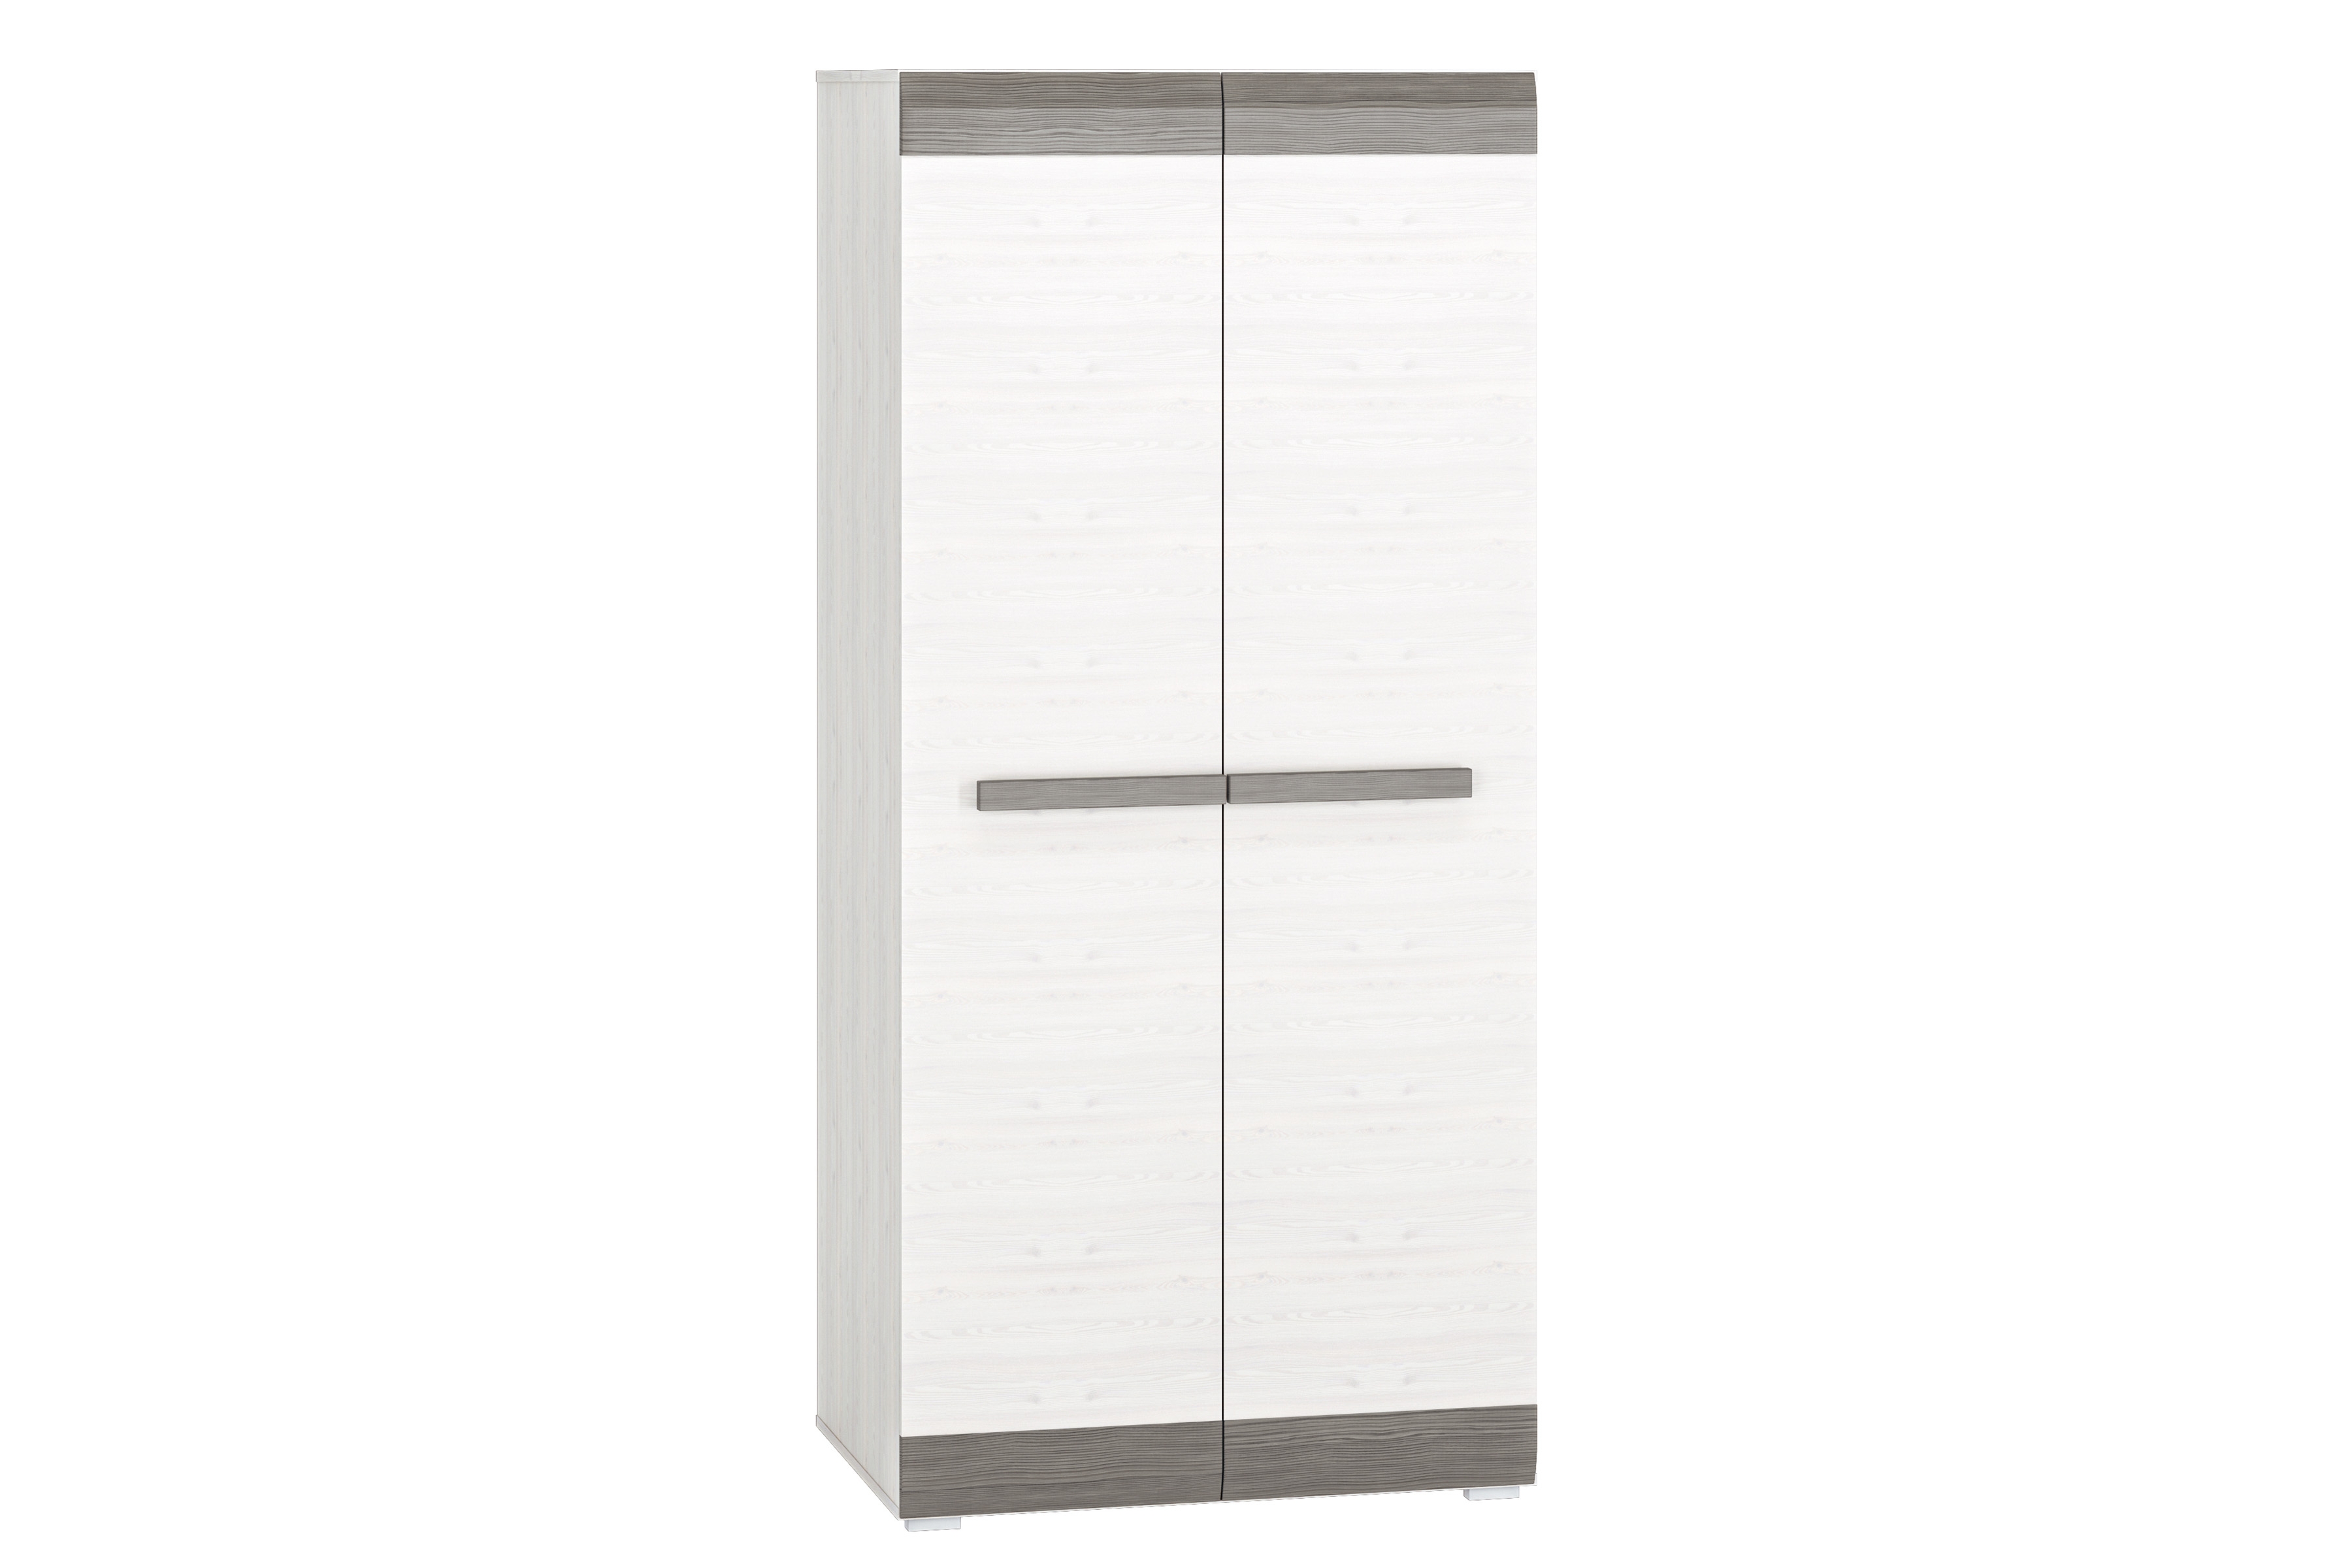 Blanco 01 kétajtós szekrény - 92 cm - hófenyő / new grey két ajto ruhásszekrény Blanco 01 - 92 cm - fenyőfa sniezna / new grey